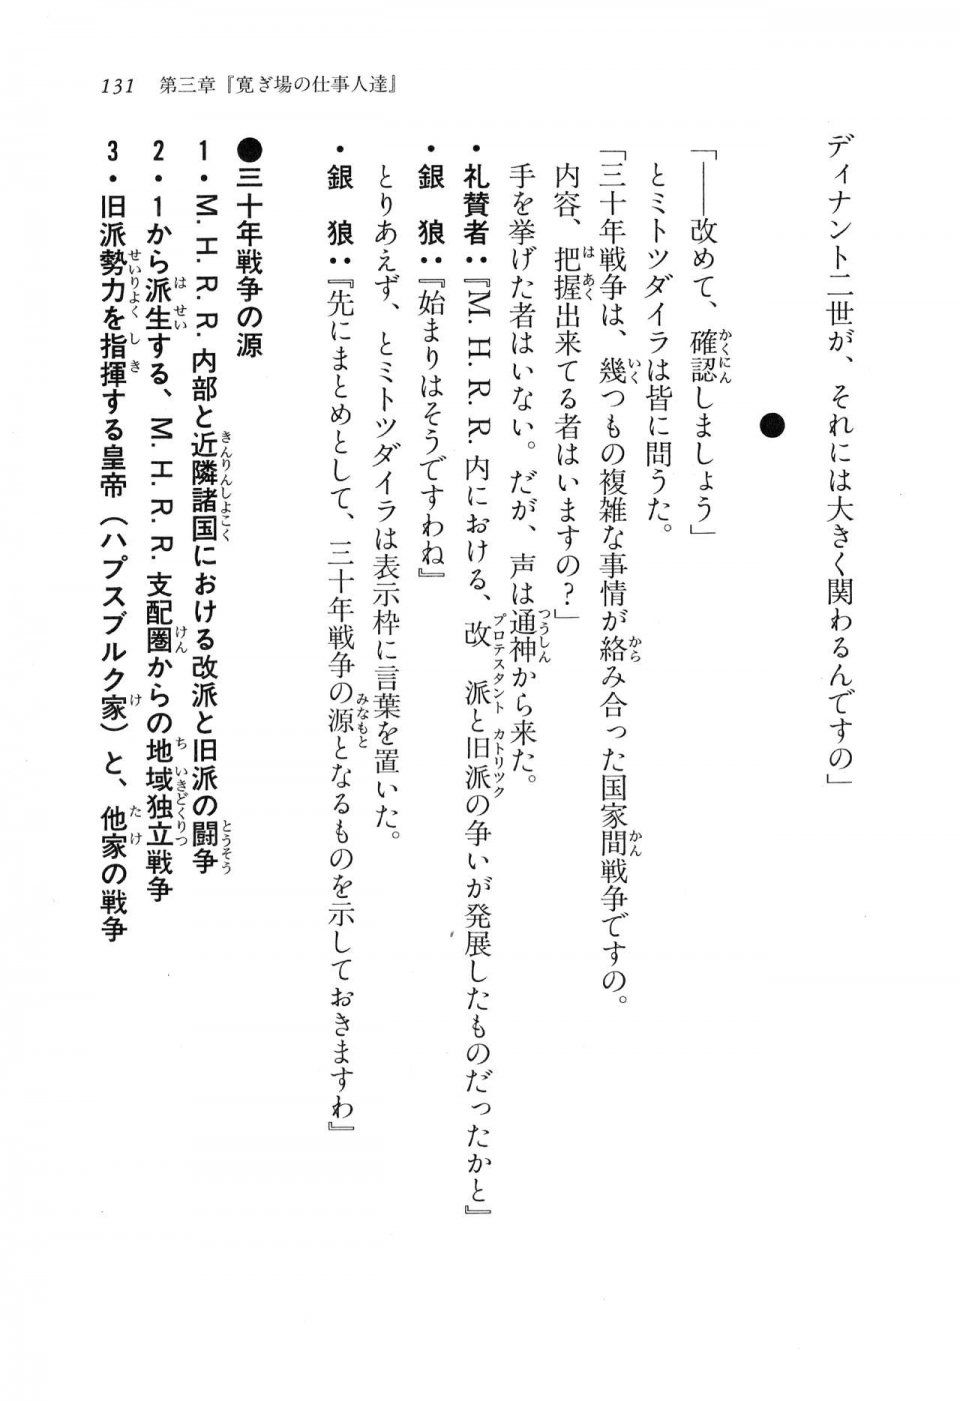 Kyoukai Senjou no Horizon LN Vol 16(7A) - Photo #131